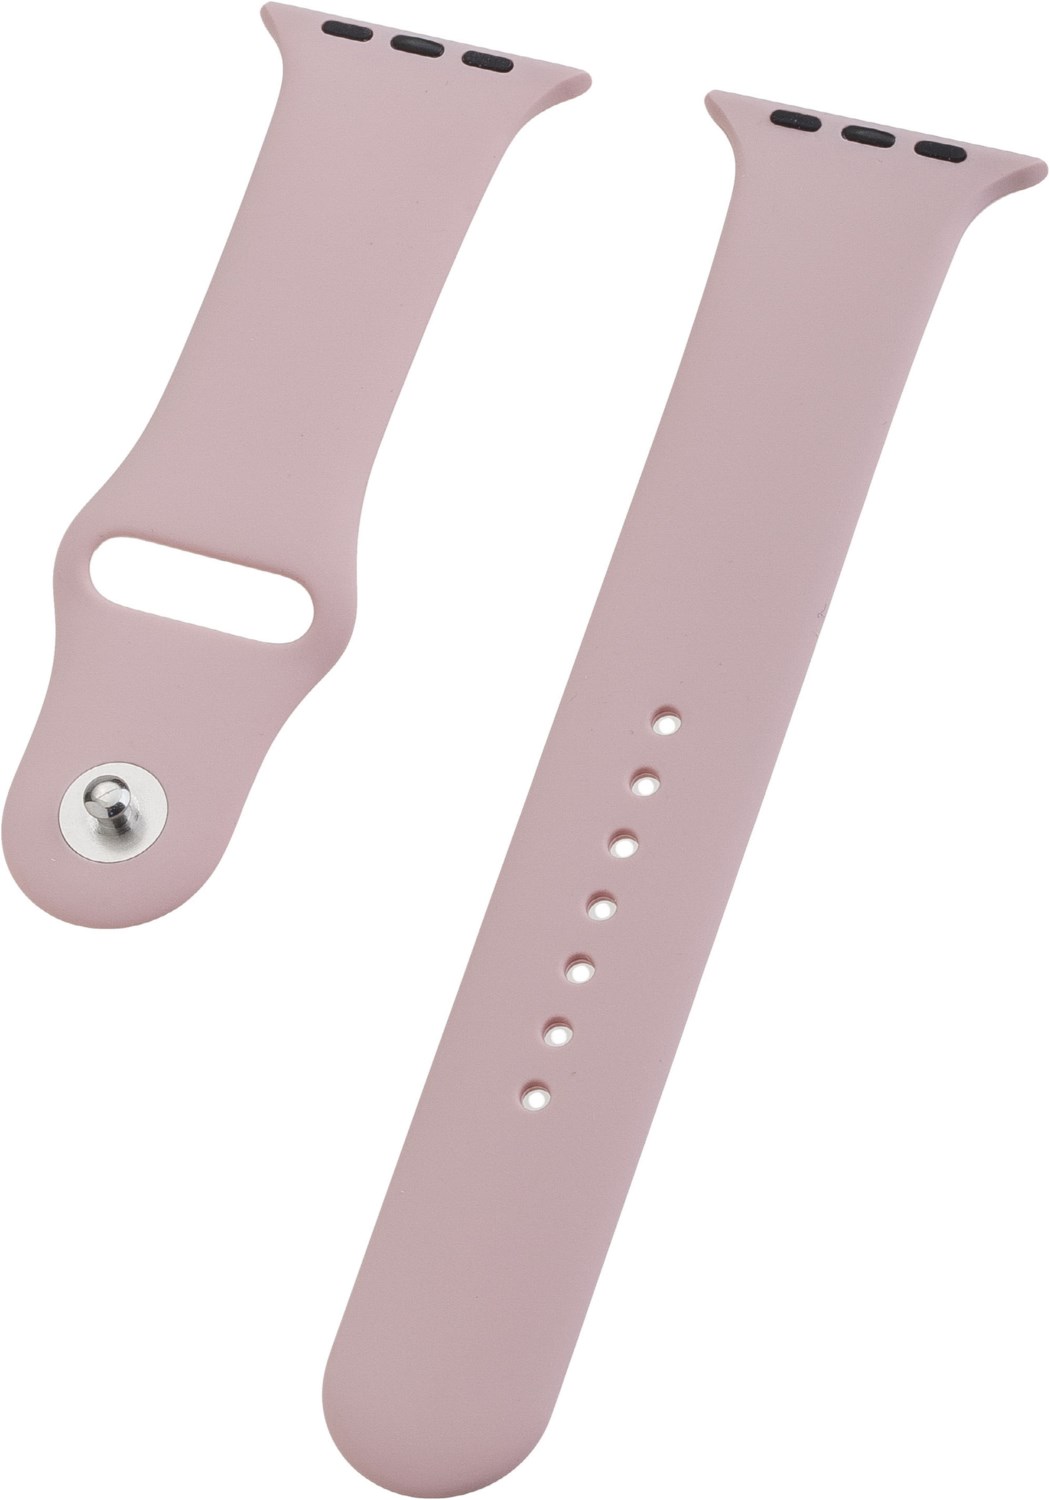 Watch Band Silikon für Apple Watch (44mm/42mm) pink